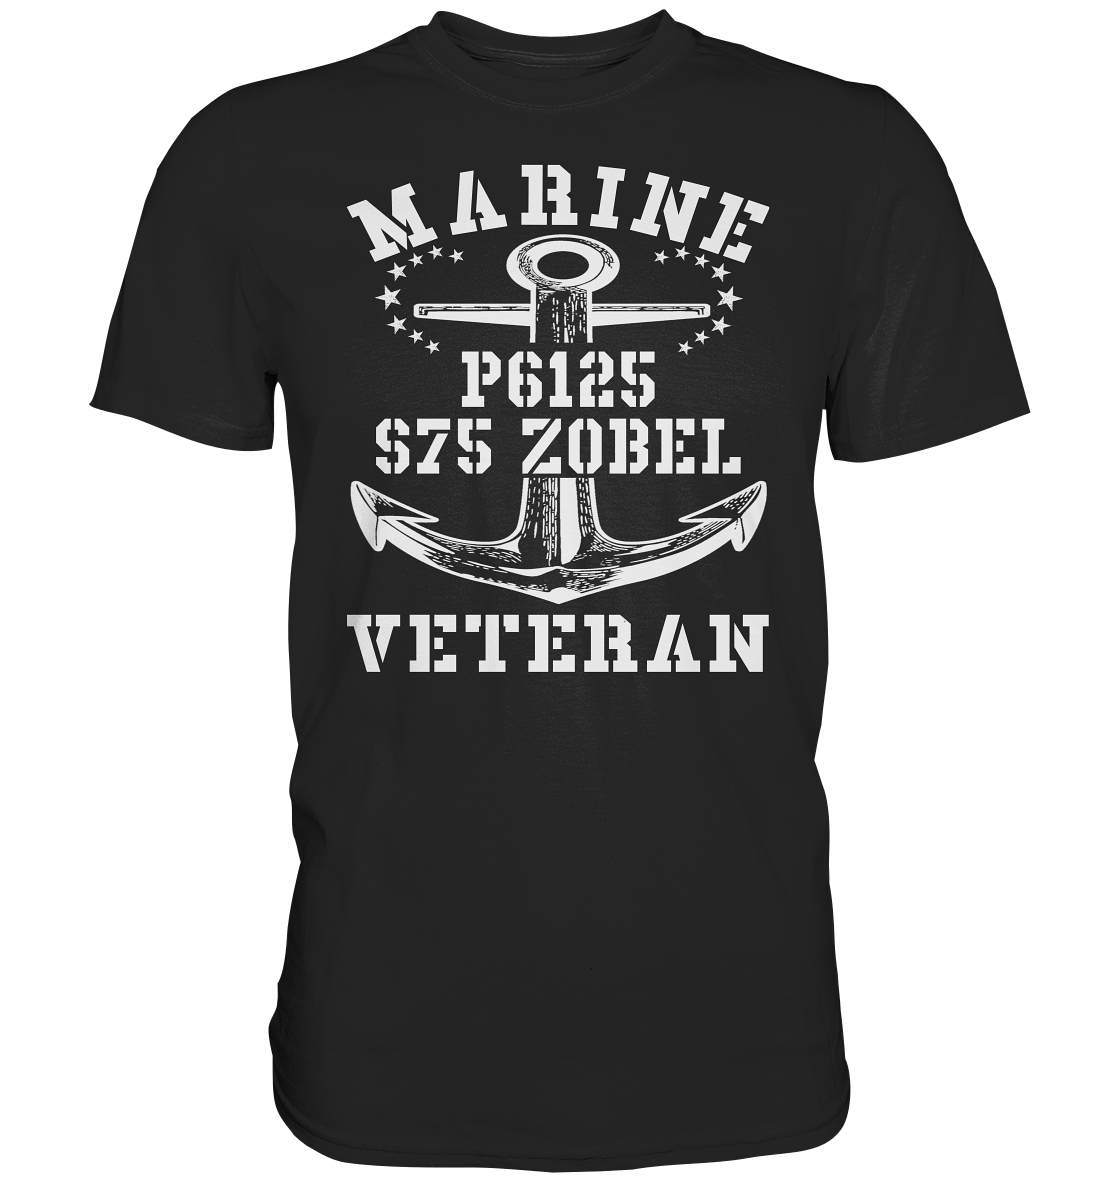 FK-Schnellboot P6125 ZOBEL Marine Veteran - Premium Shirt